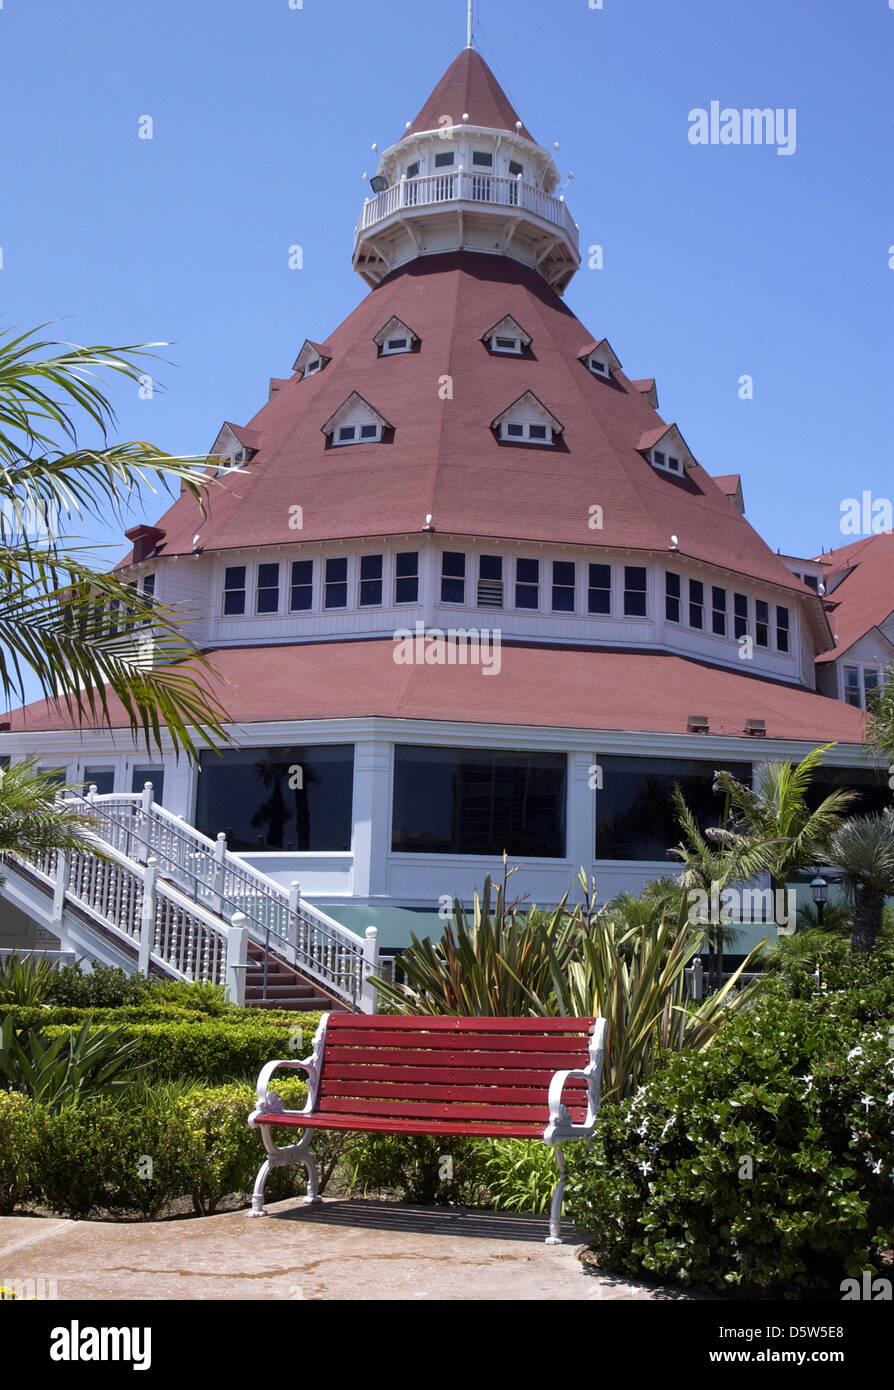 Banco Rojo del Hotel del Coronado Coronado en la Bahía de San Diego, California, el Hotel Del, Supr, beach resort, Victoriano de madera Foto de stock